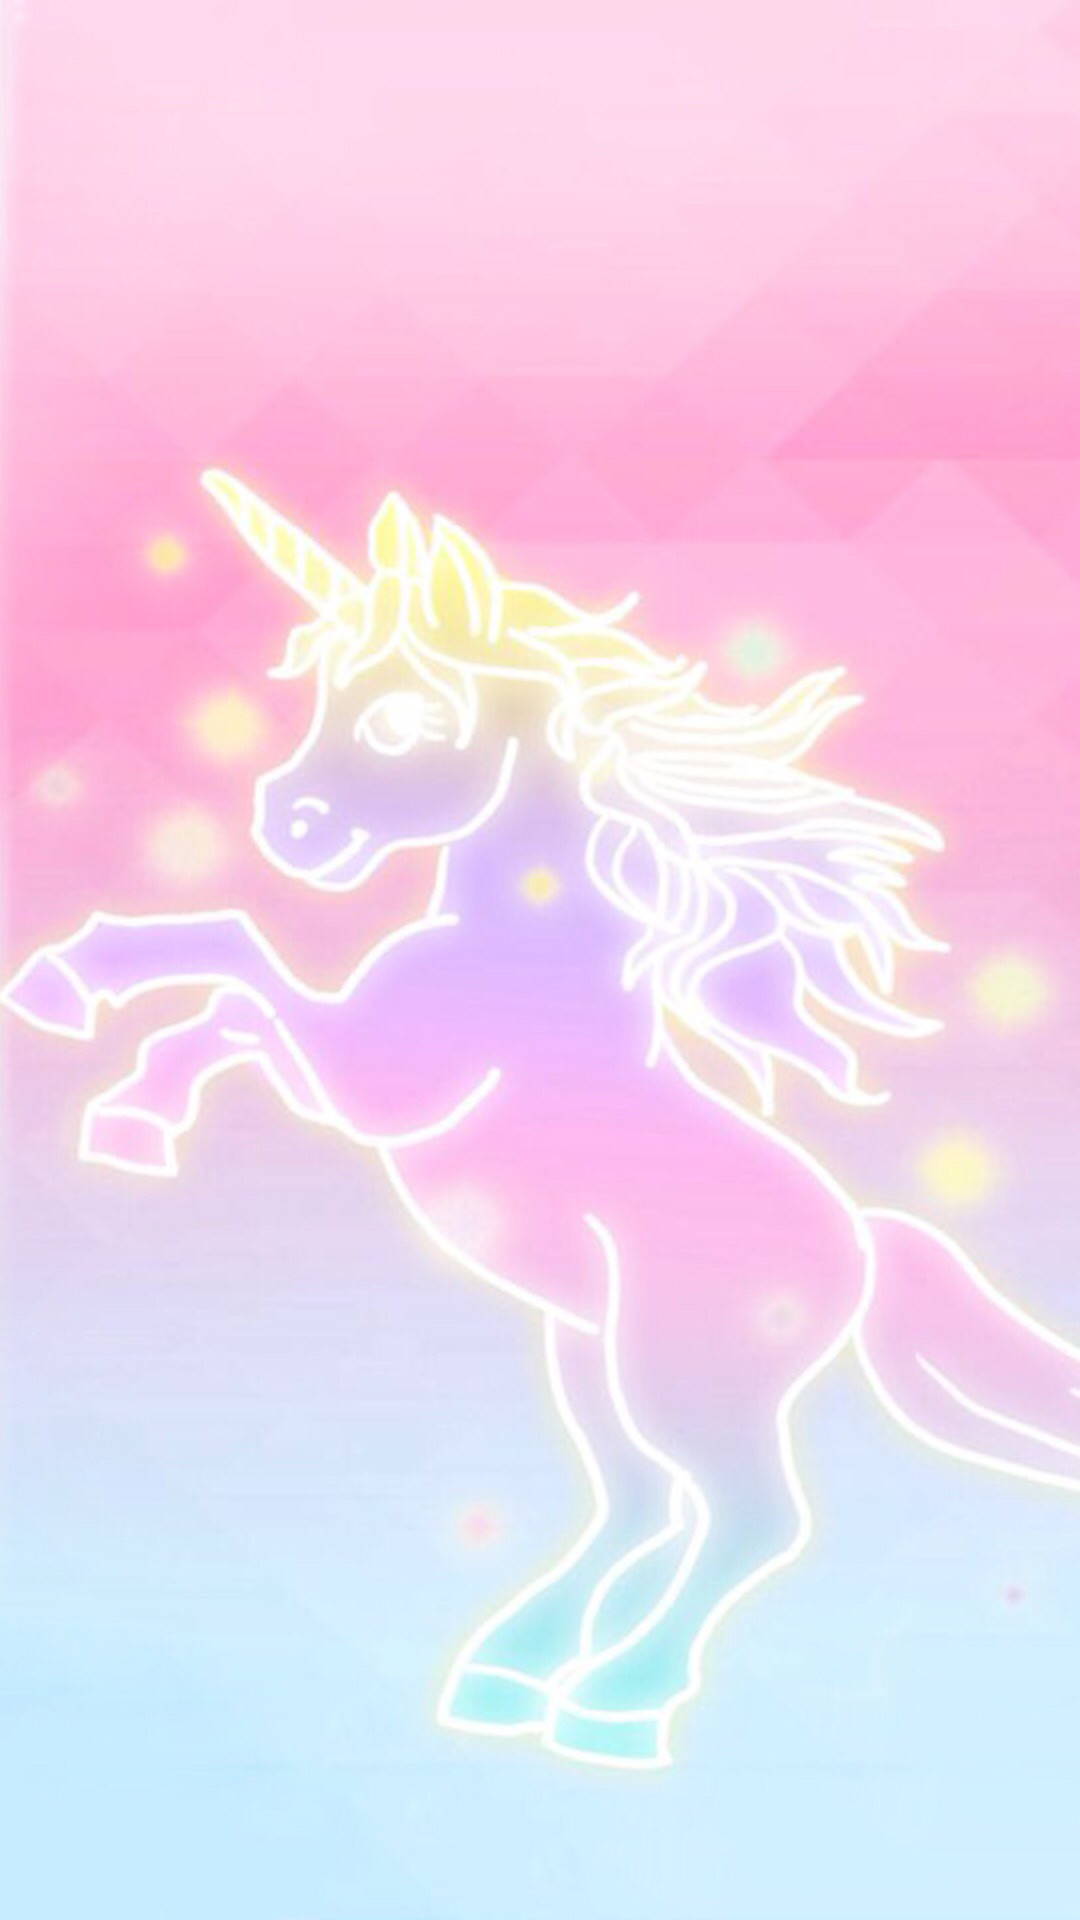 1080x1920 emoji unicorn wallpaper resume 71 4k uhd persona best hd